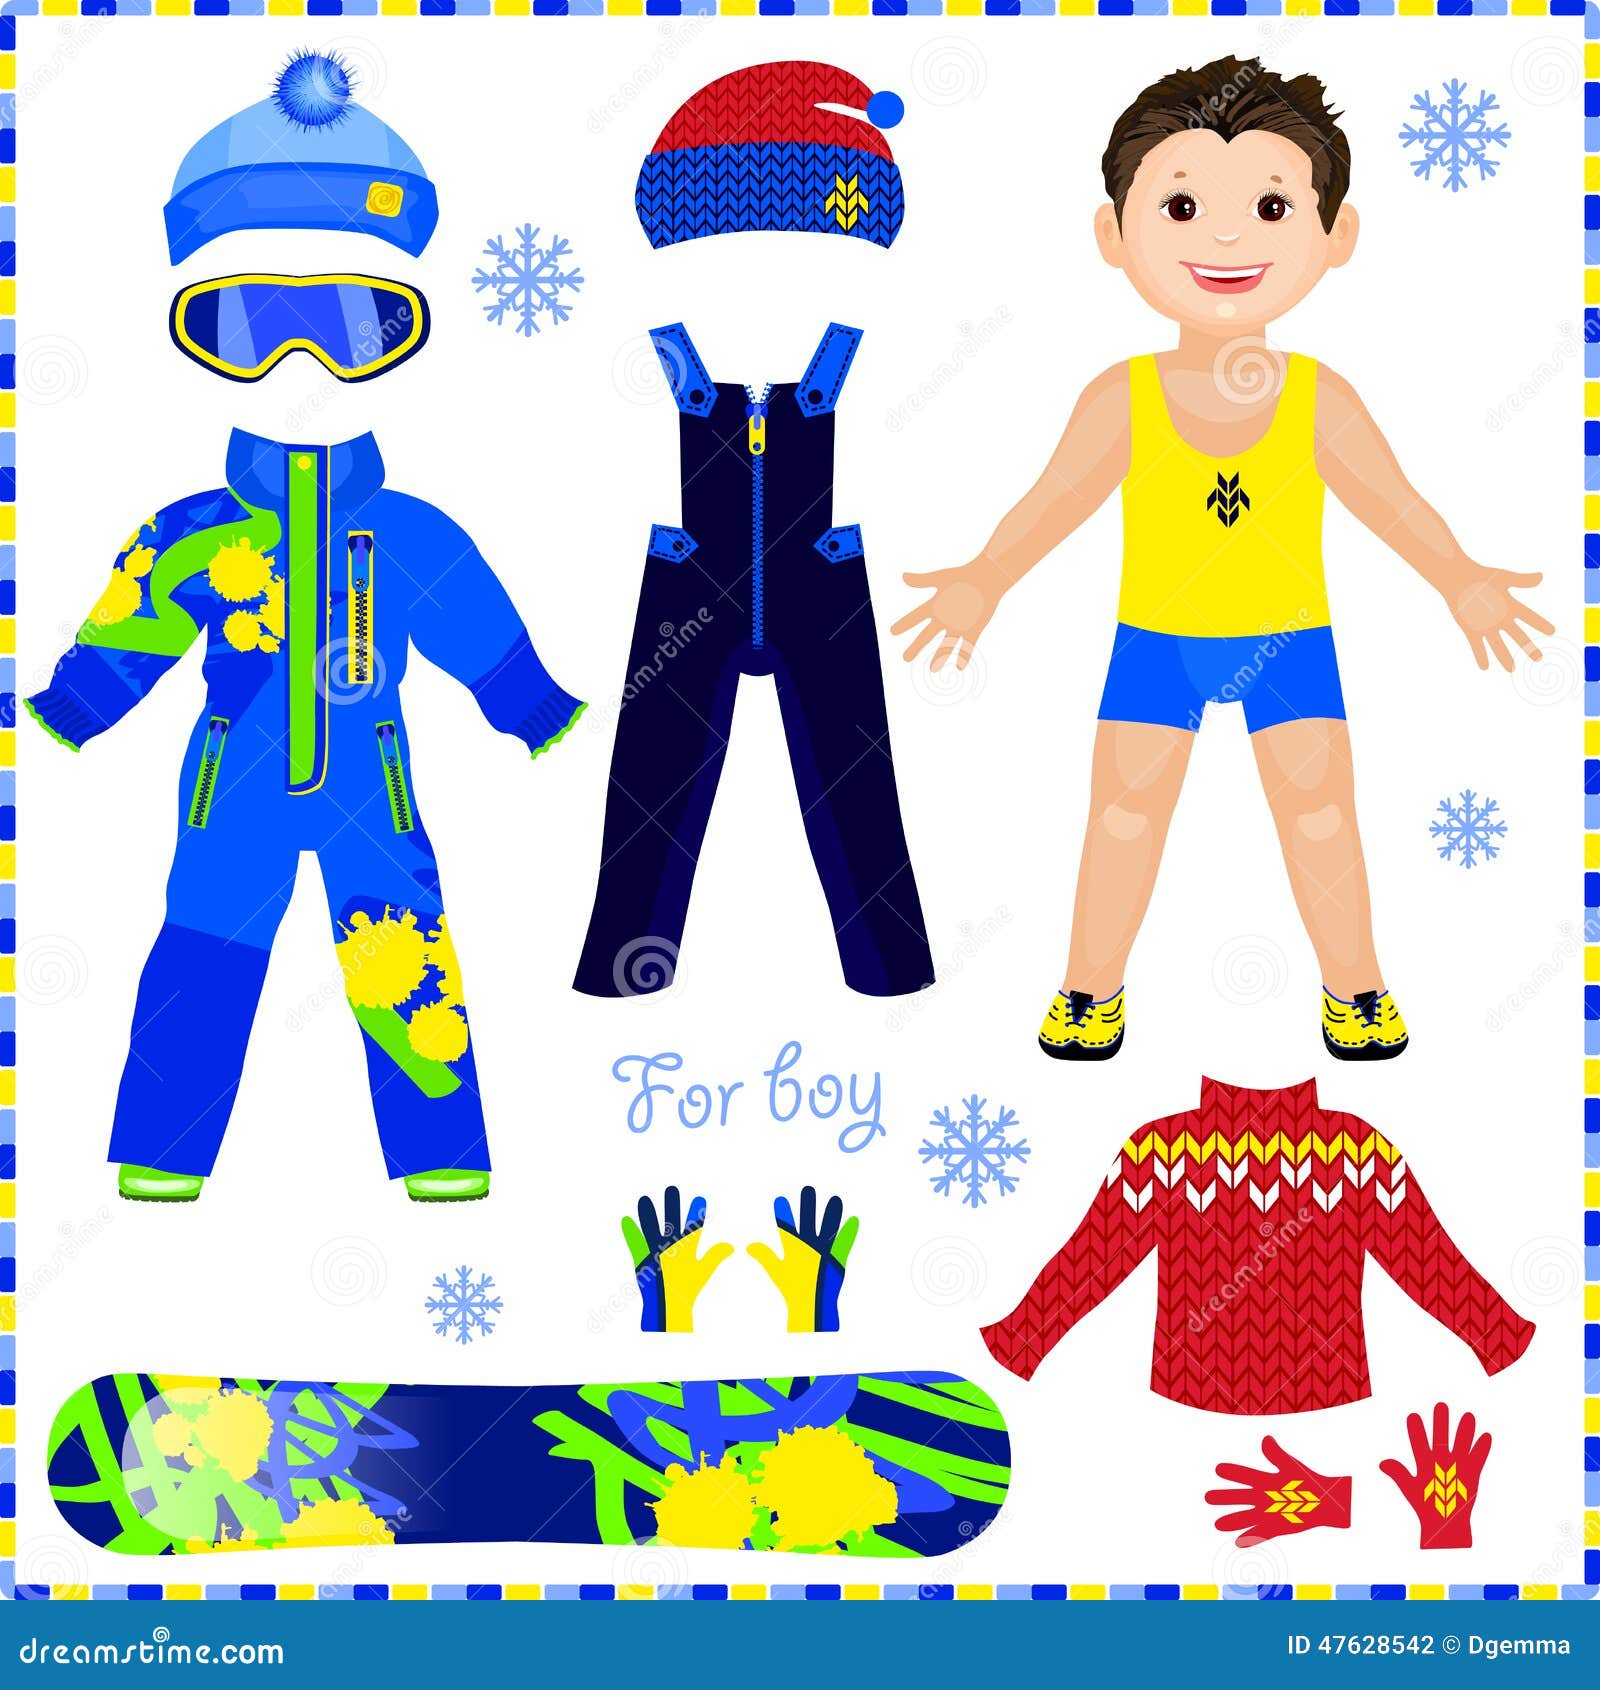 Игра одень мальчика. Бумажный мальчик с одеждой. Бумажная кукла мальчик с зимней одеждой. Спортивная одежда для бумажной куклы. Куколка бумажная для одевания.